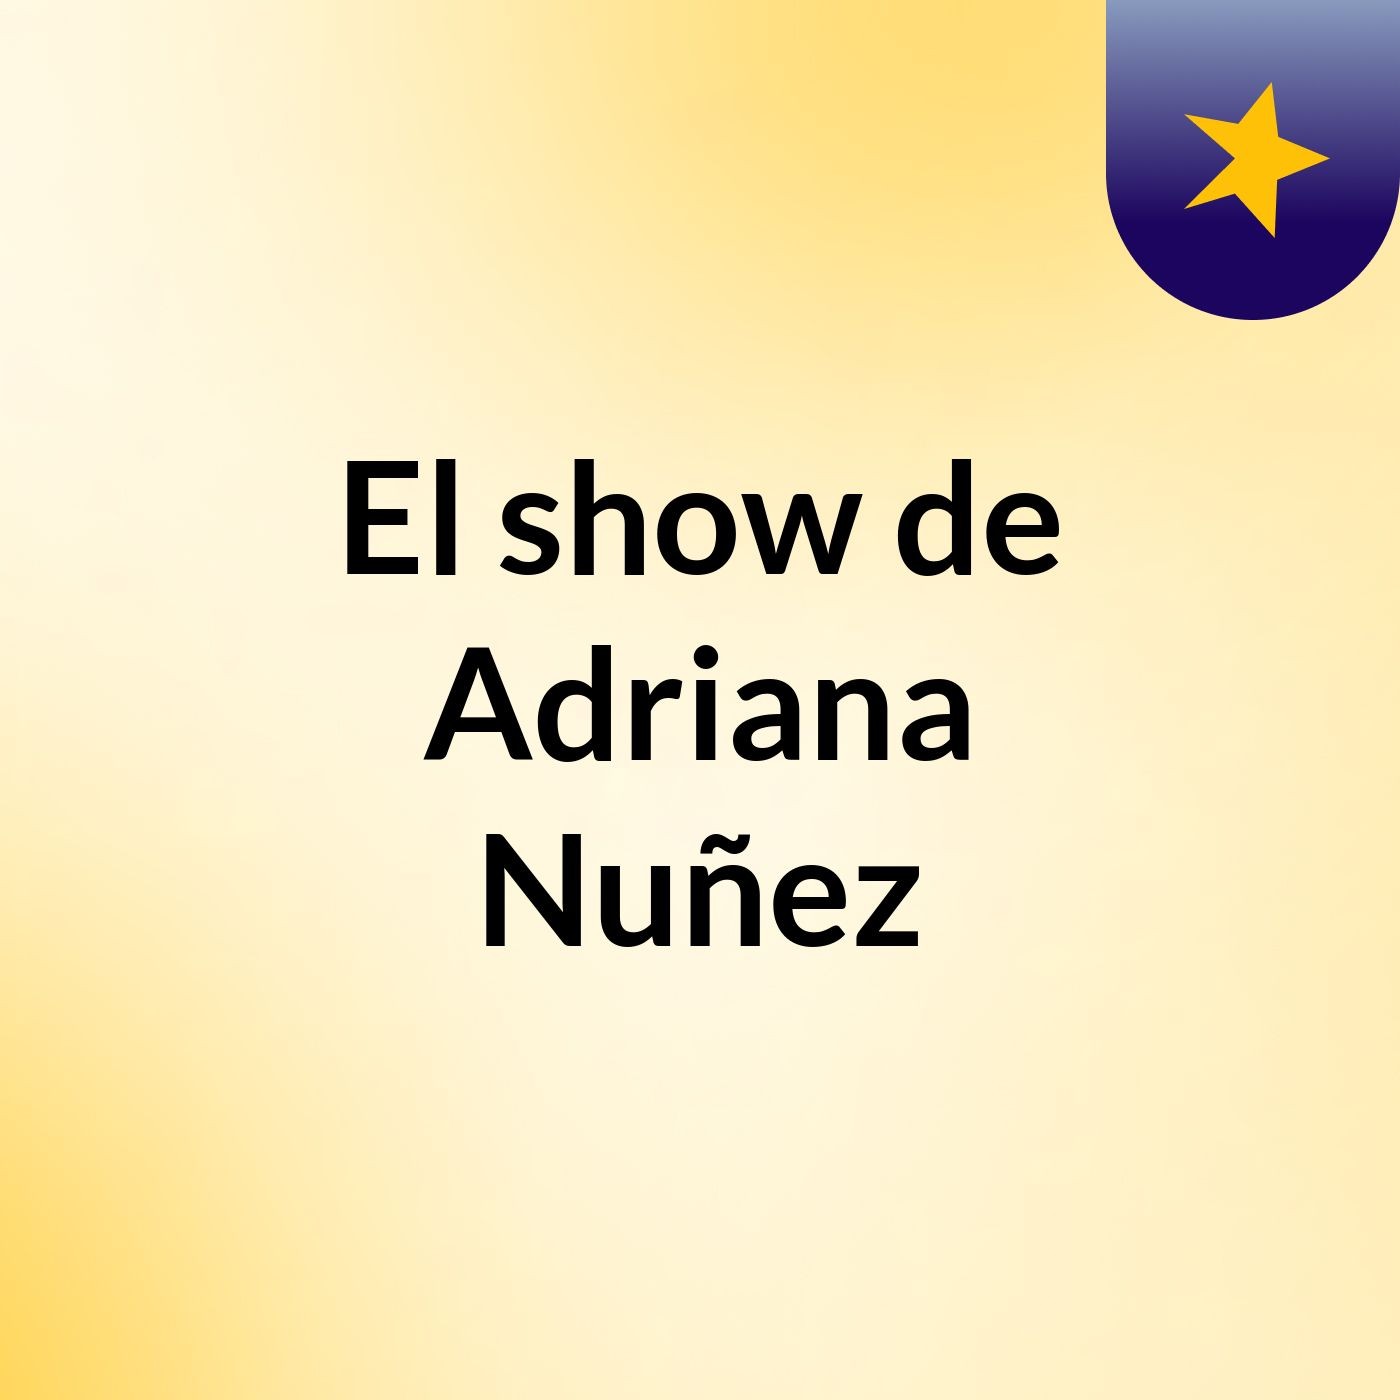 El show de Adriana Nuñez